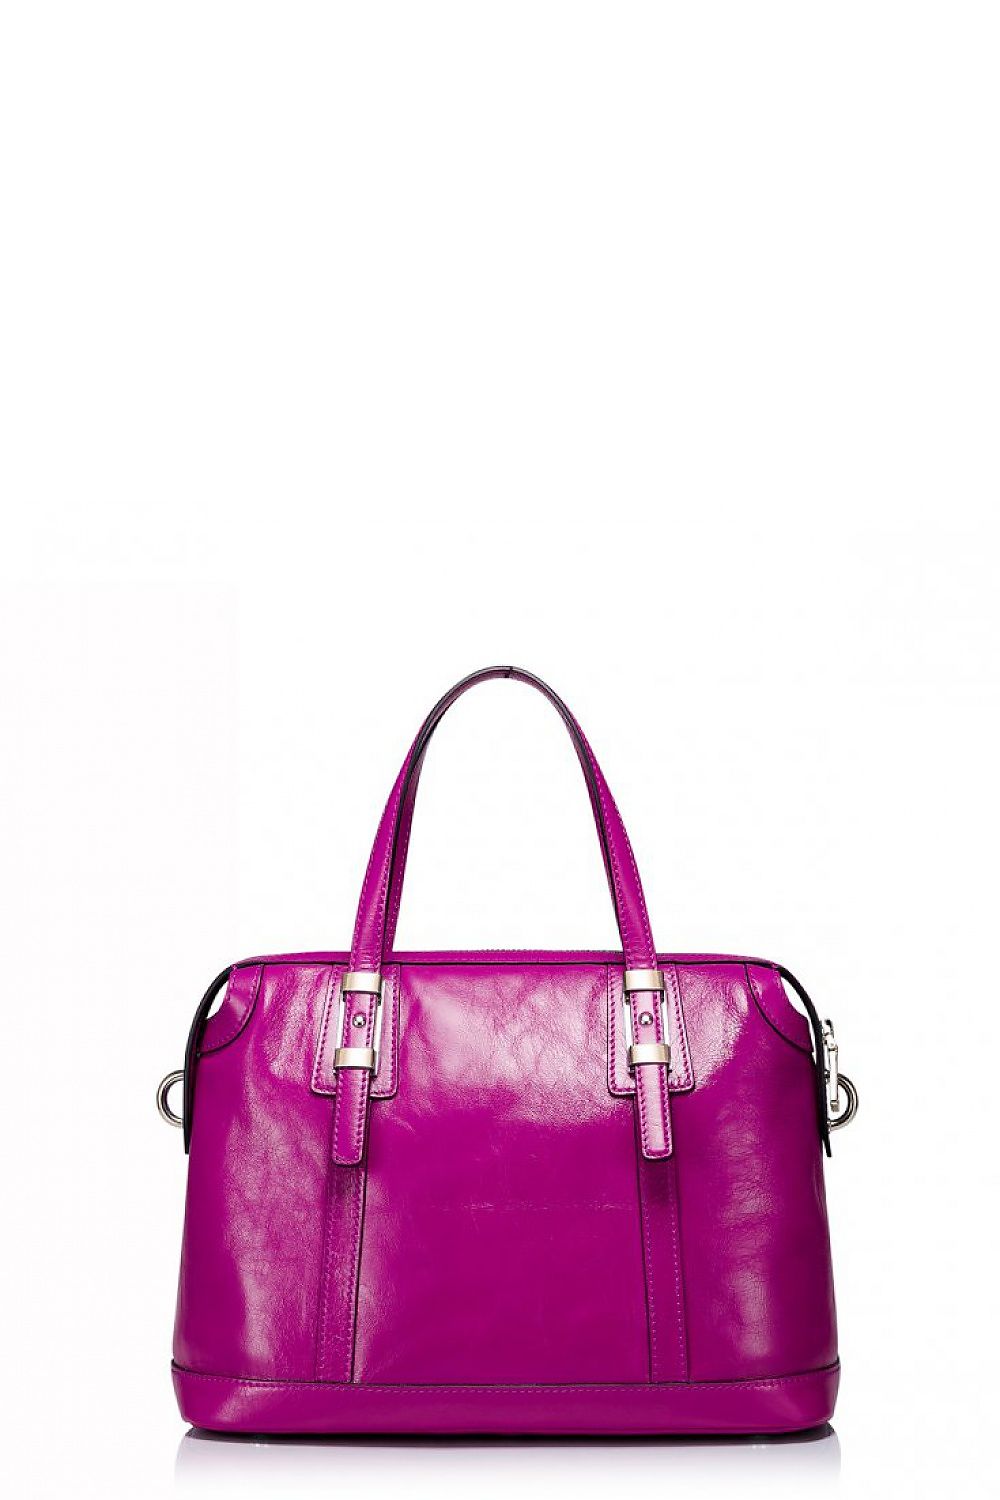 Everyday handbag model 57916 Nucelle Casual Handbags, Shoulder Bags ...